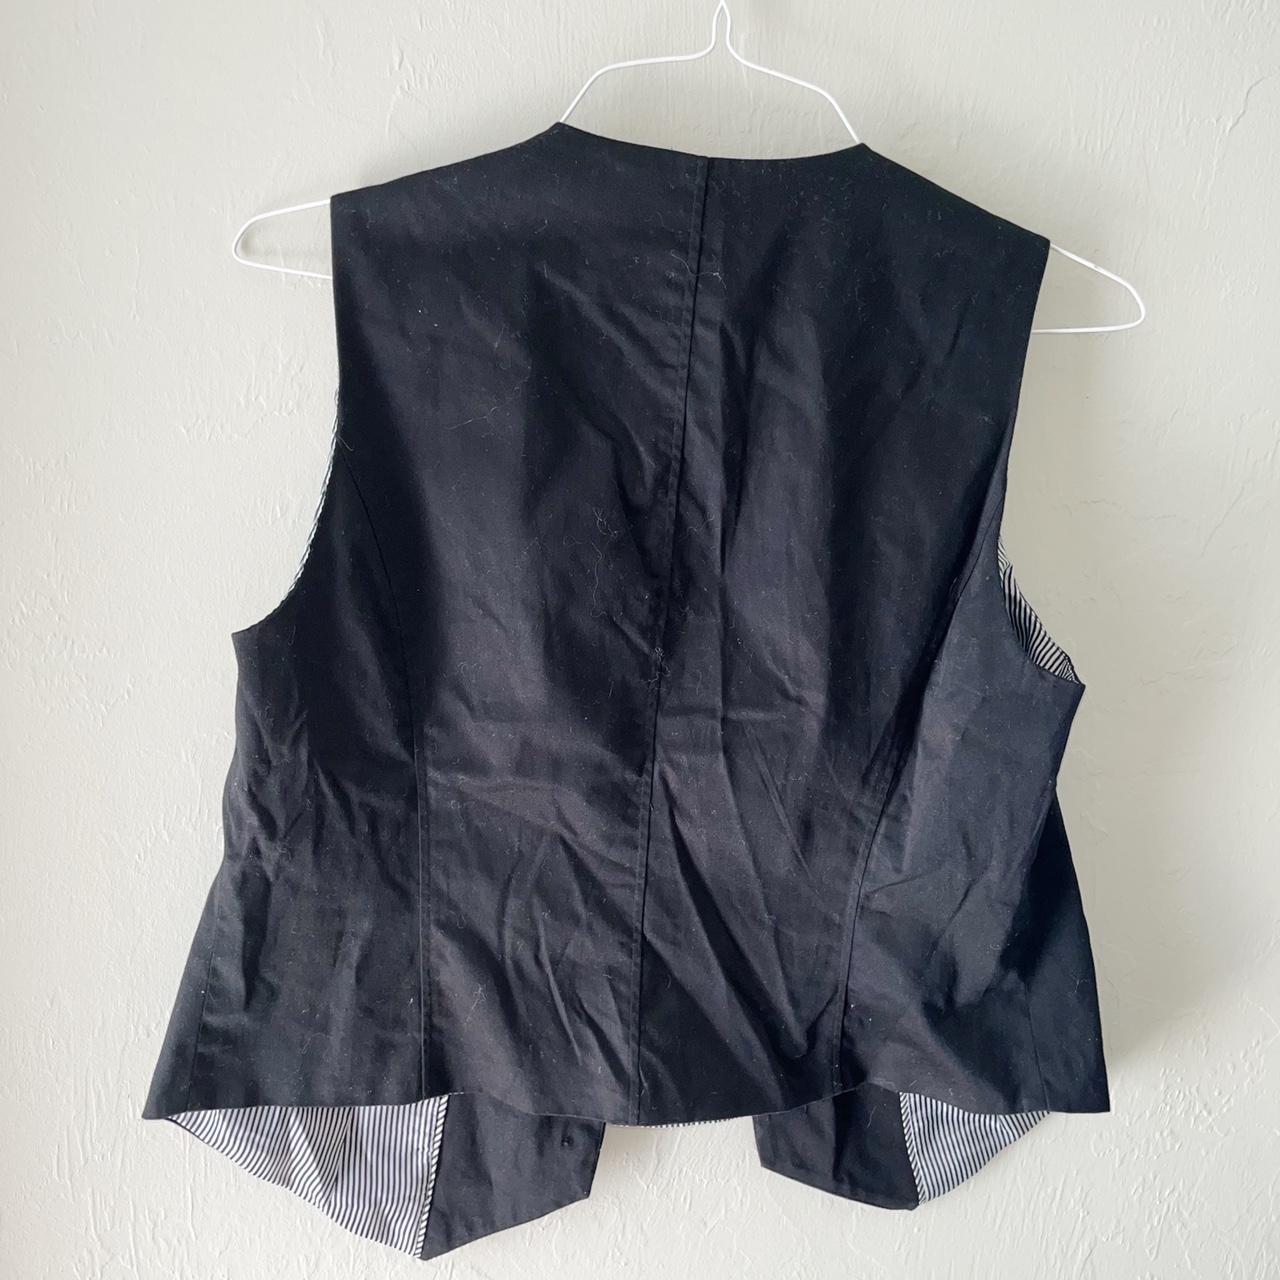 Product Image 3 - Black Y2K button vest. Size